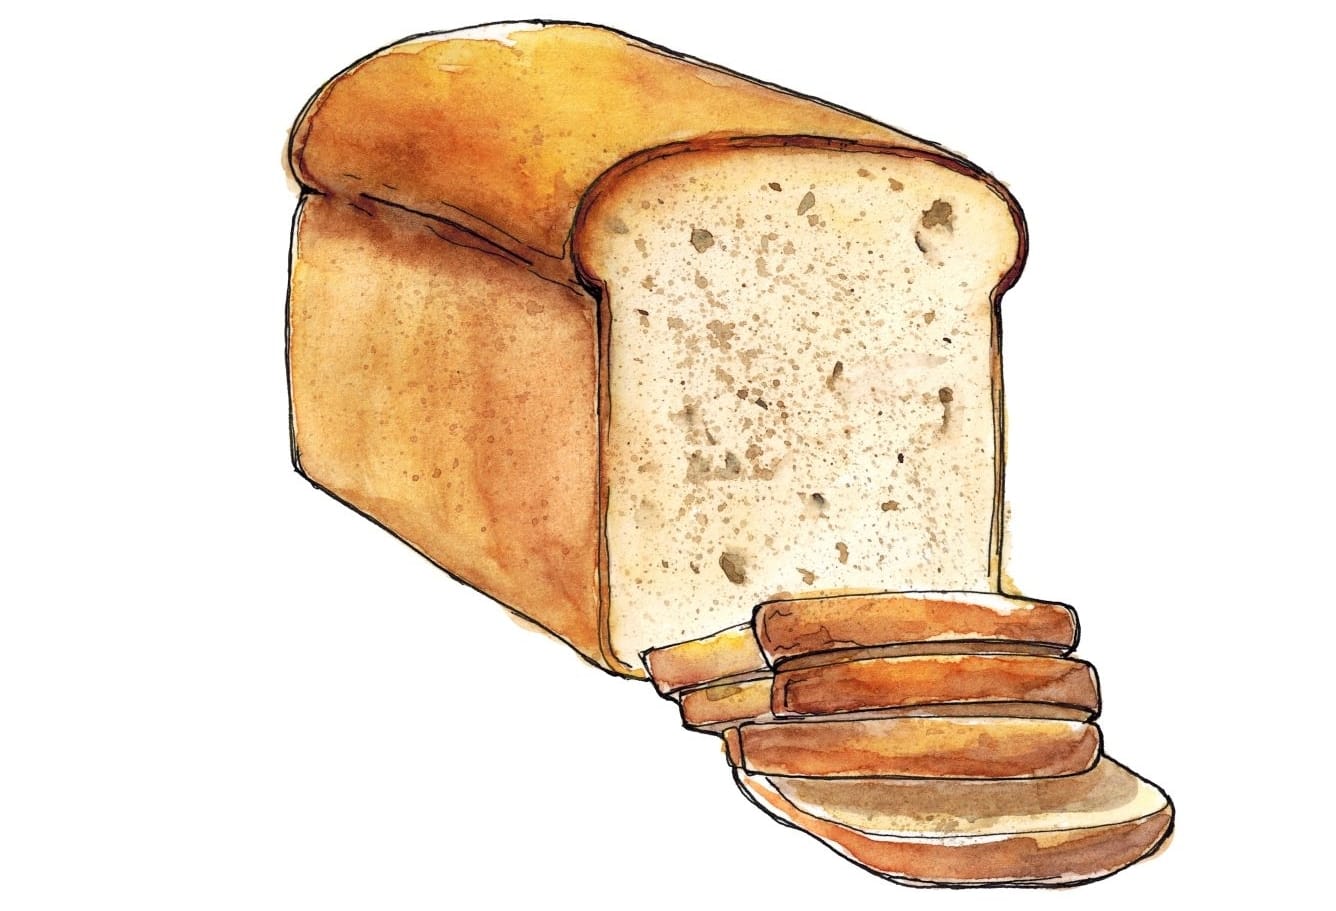 Loaf bread illustration.